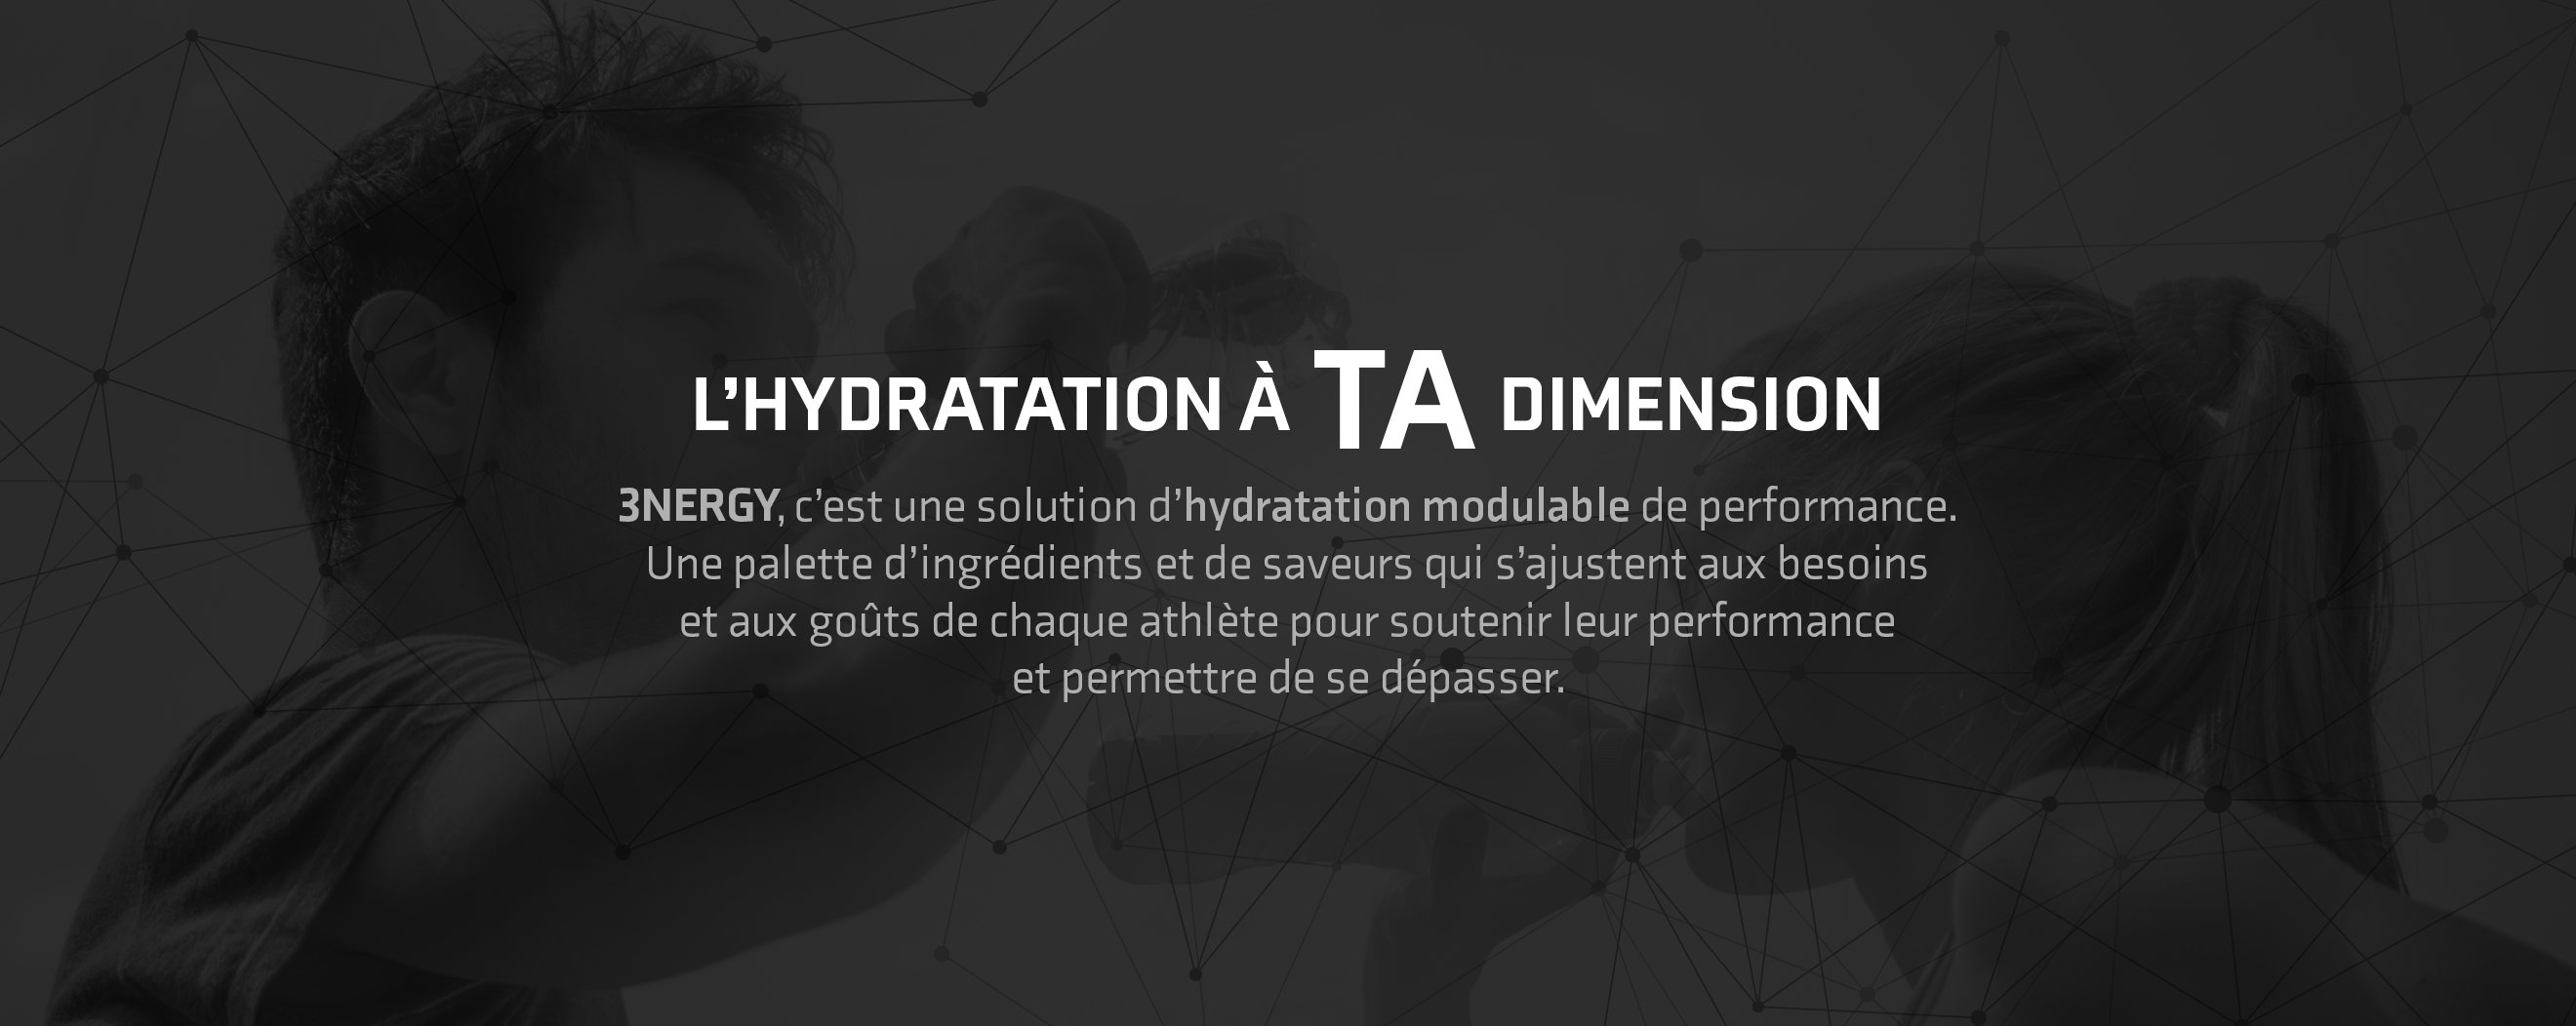 L'hydratation à TA dimension 3NERGY, c'est une solution d'hydratation modulable de performance. Une palette d'ingrédients et de saveurs qui s'ajustent aux besoins et aux goûts de chaque athlète pour soutenir leur performance et permettre de se dépasser